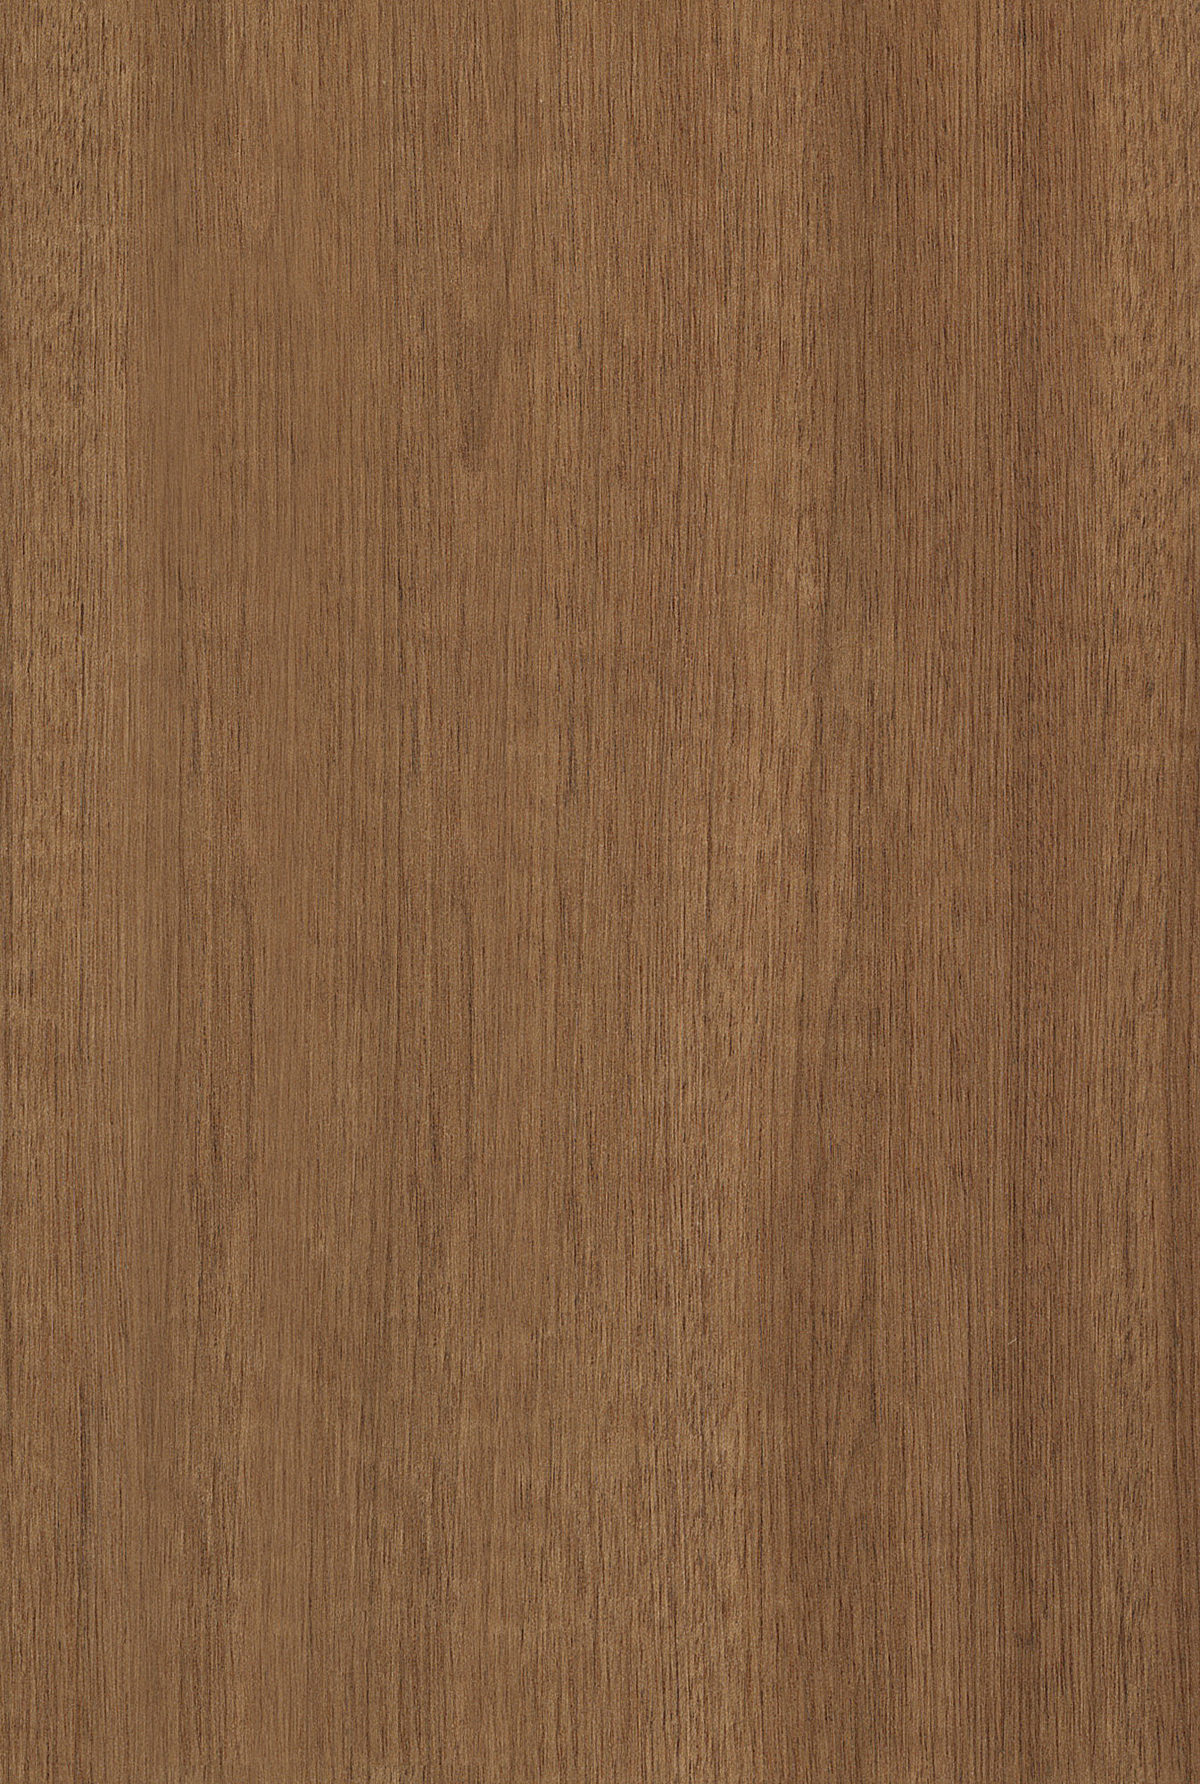 (18)木头老旧木板原木色材质贴图下载 松木(9)松木木纹木板贴图 (161)